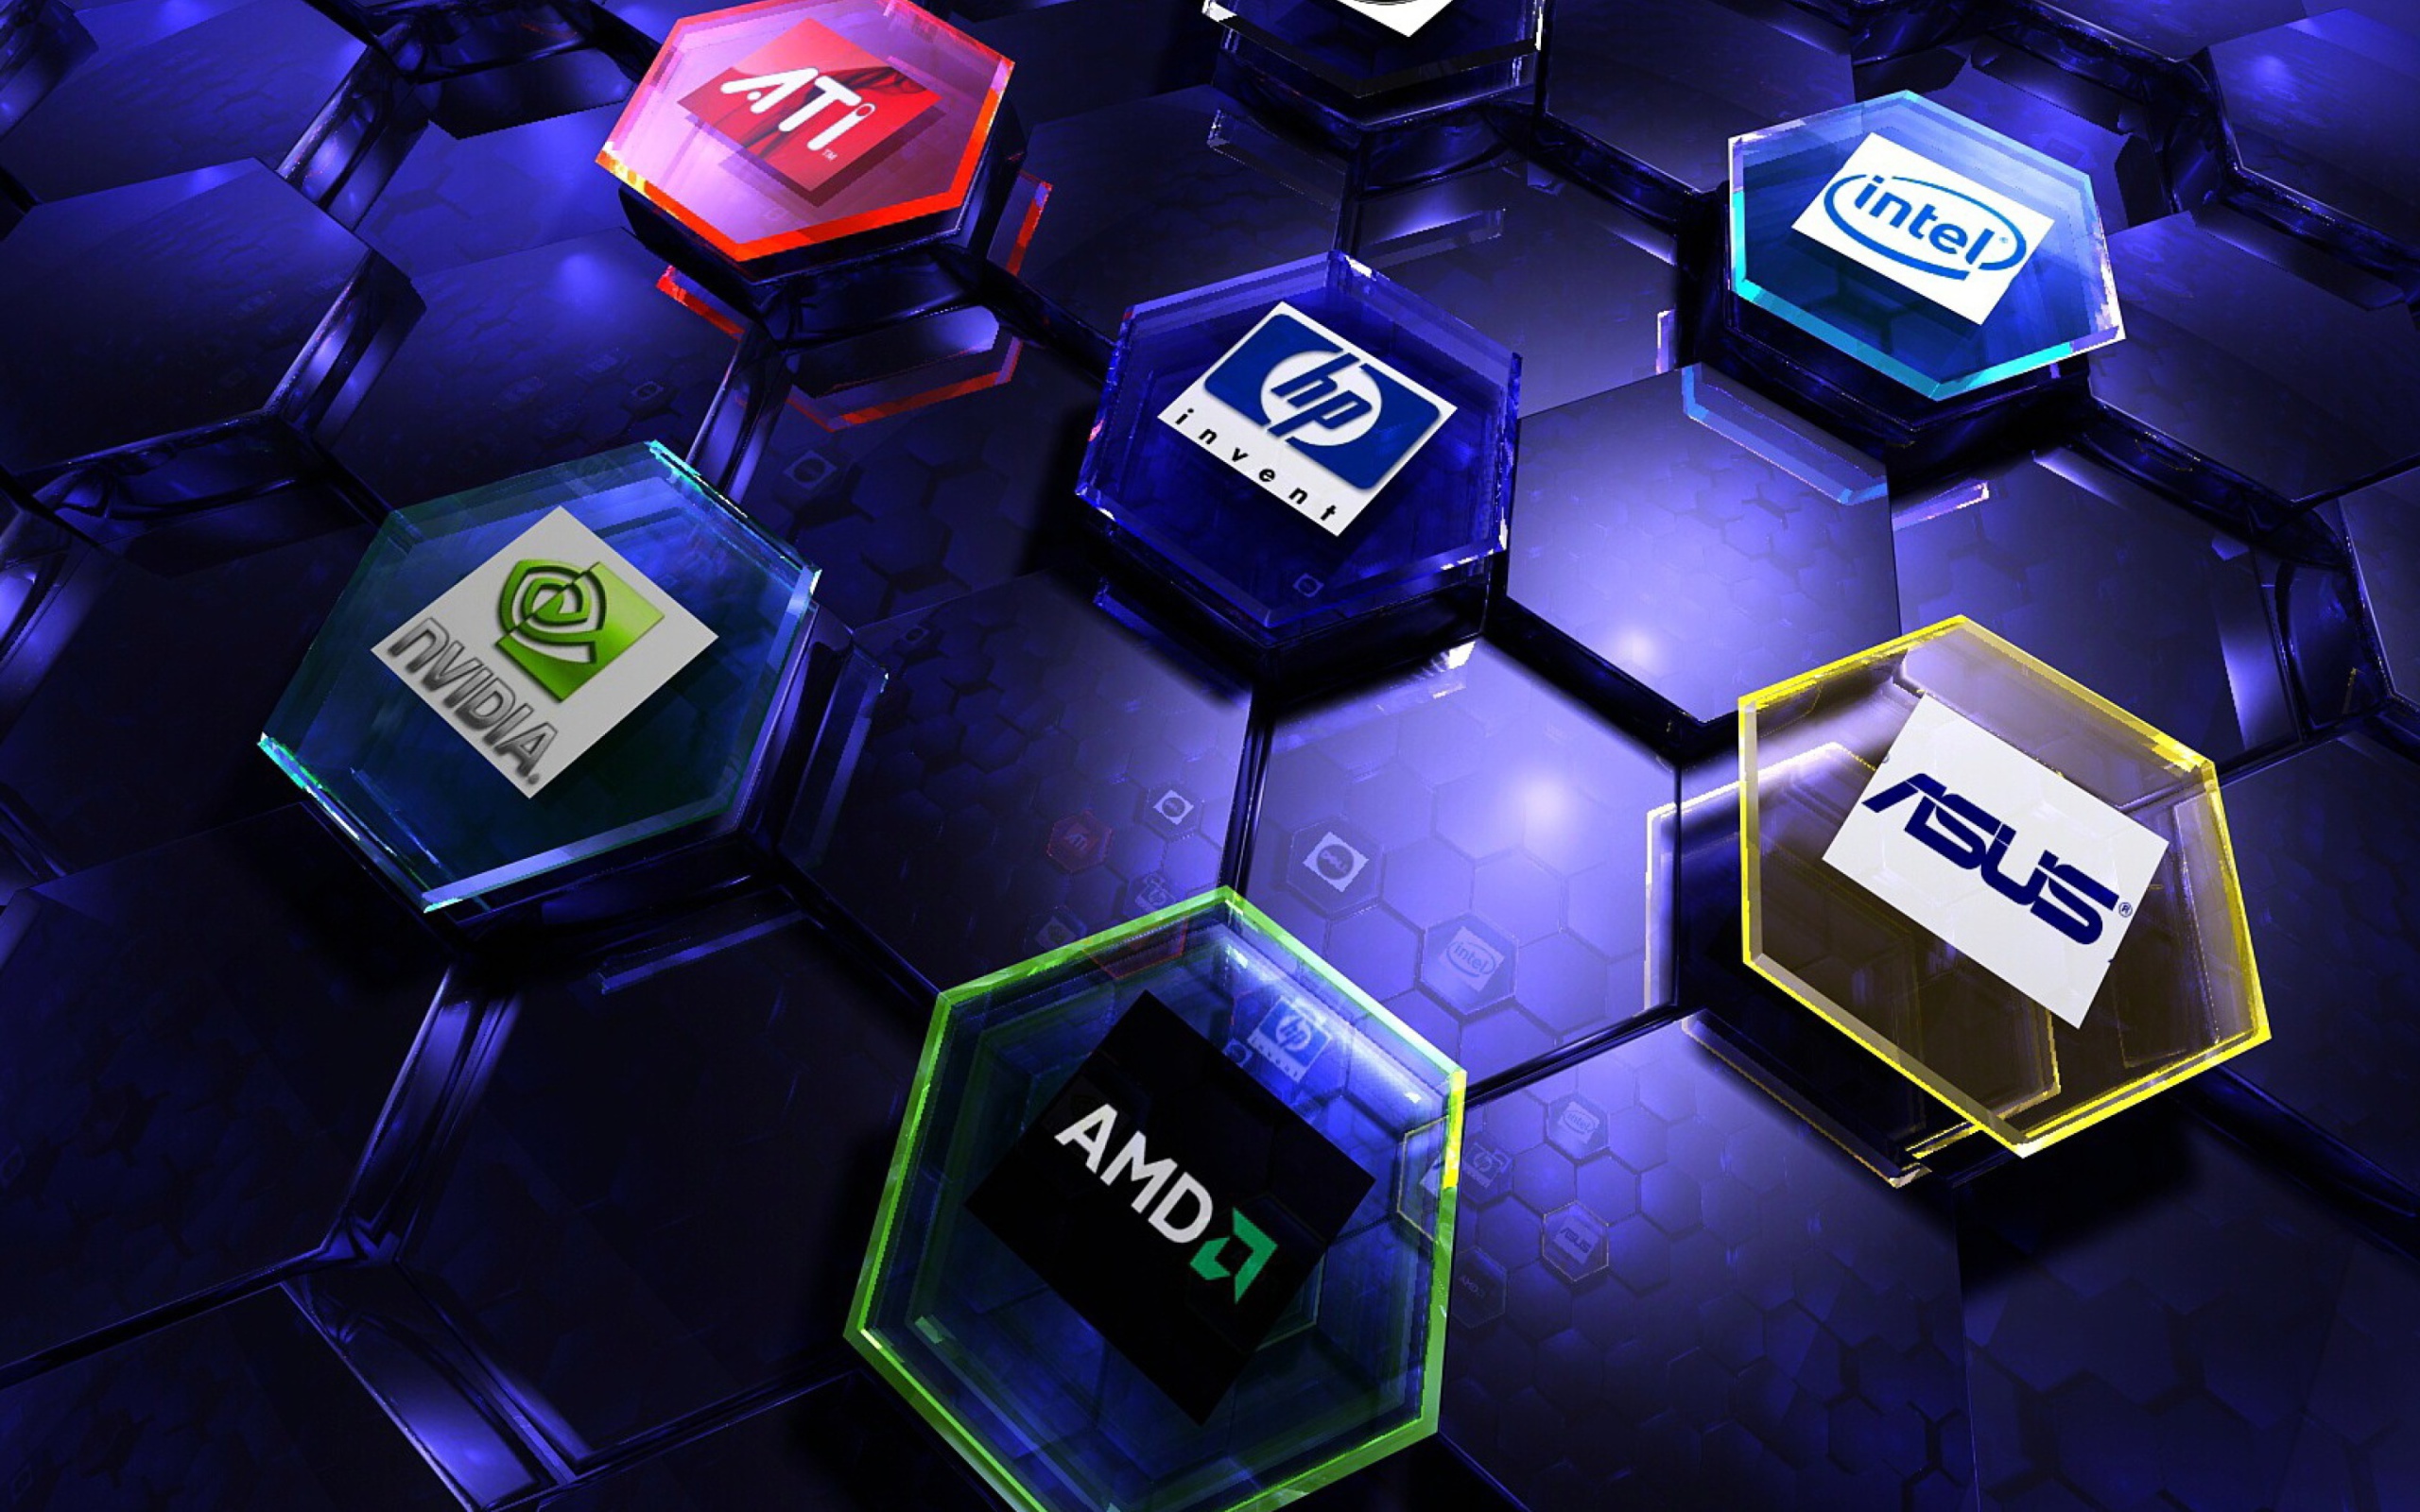 Sfondi Hi-Tech Logos: AMD, HP, Ati, Nvidia, Asus 2560x1600